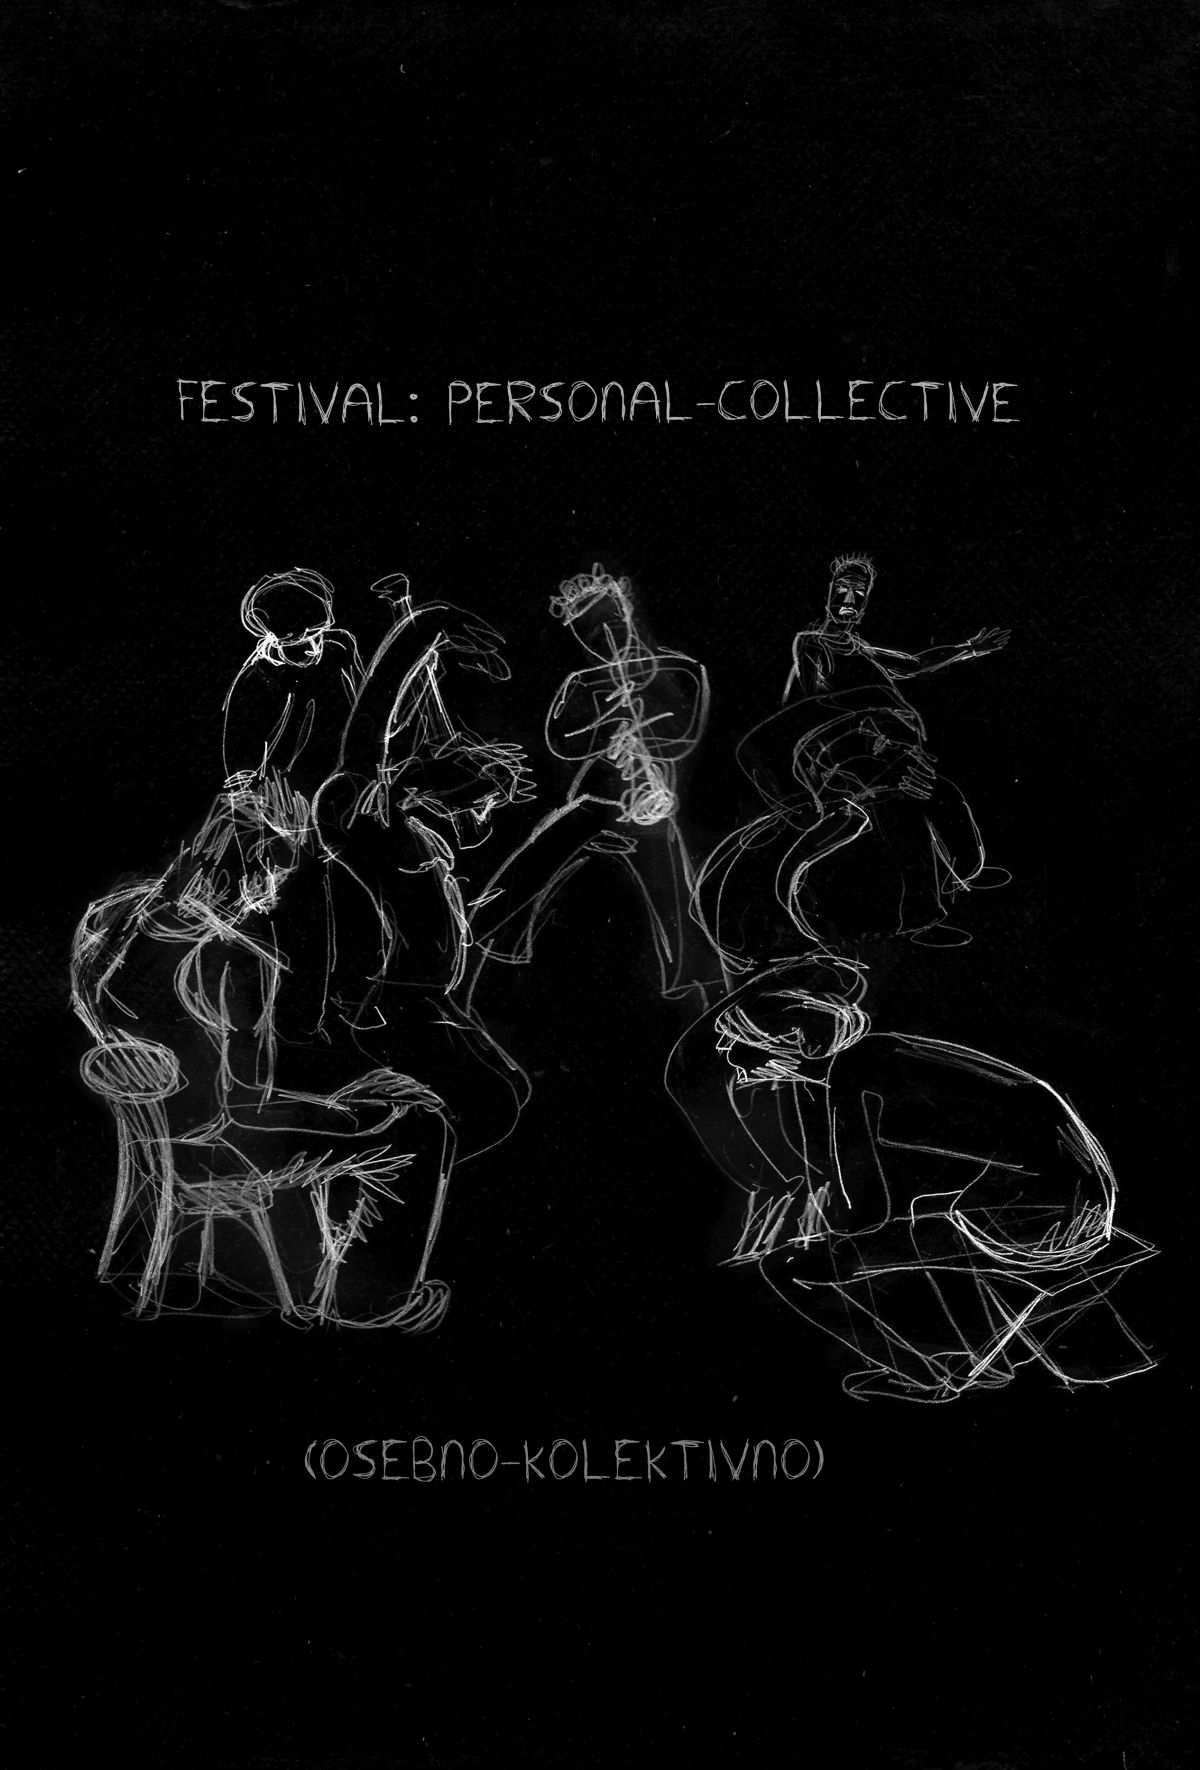 OSEBNO-KOLEKTIVNO 2011, mednarodni festival sodobne improvizirane glasbe, julij 2011. - Soorganizacija (v imenu Art središča) s KUD Mrežo in Seijirom Murayamo.